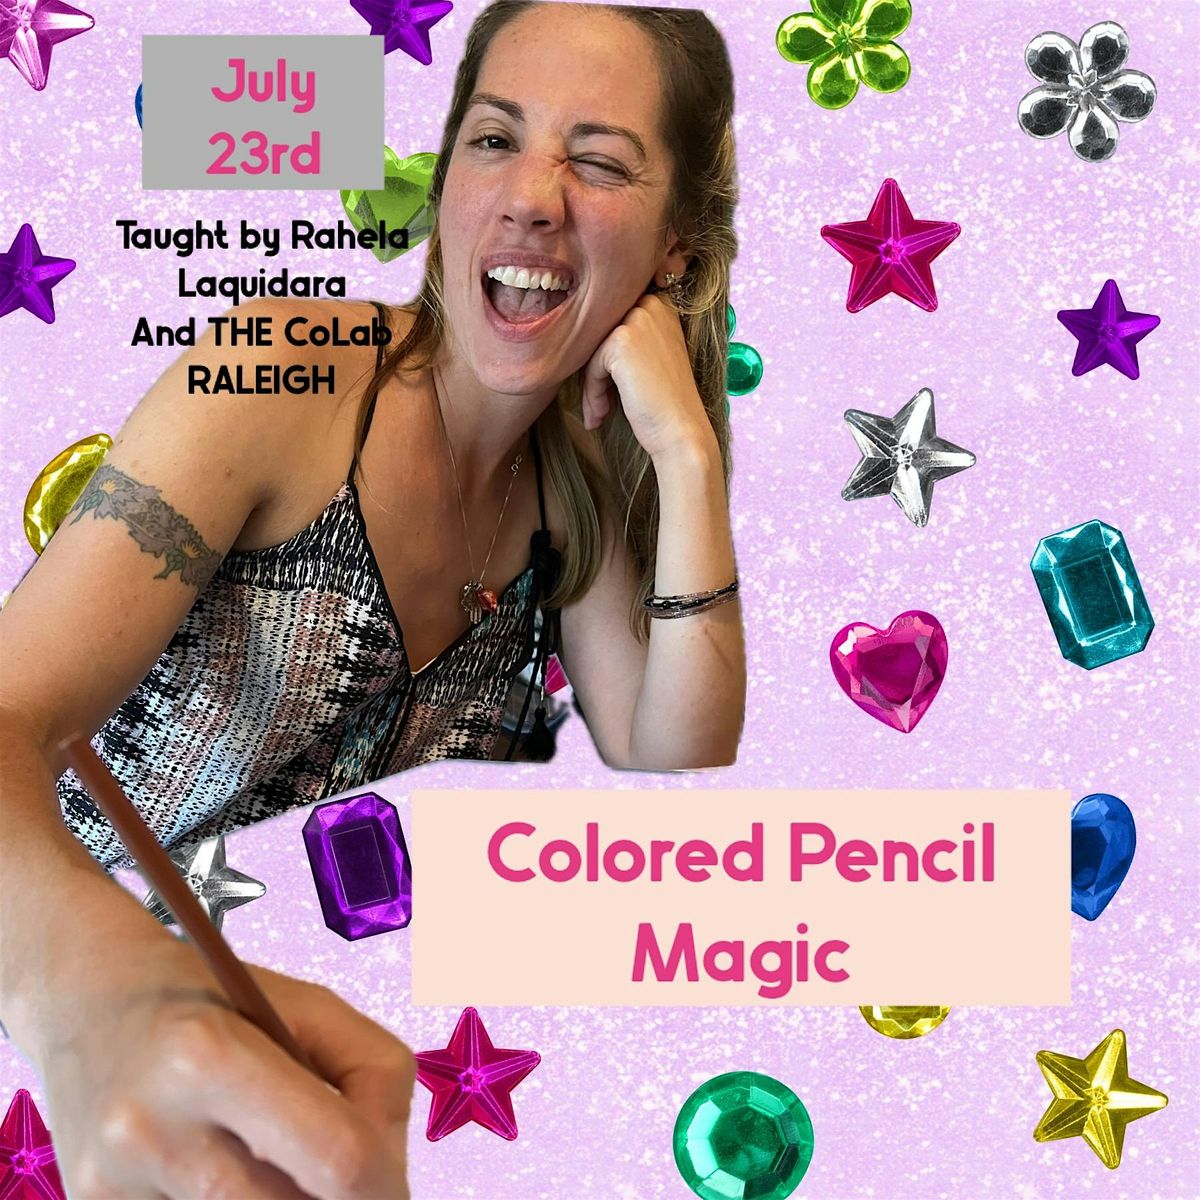 Colored Pencil Magic